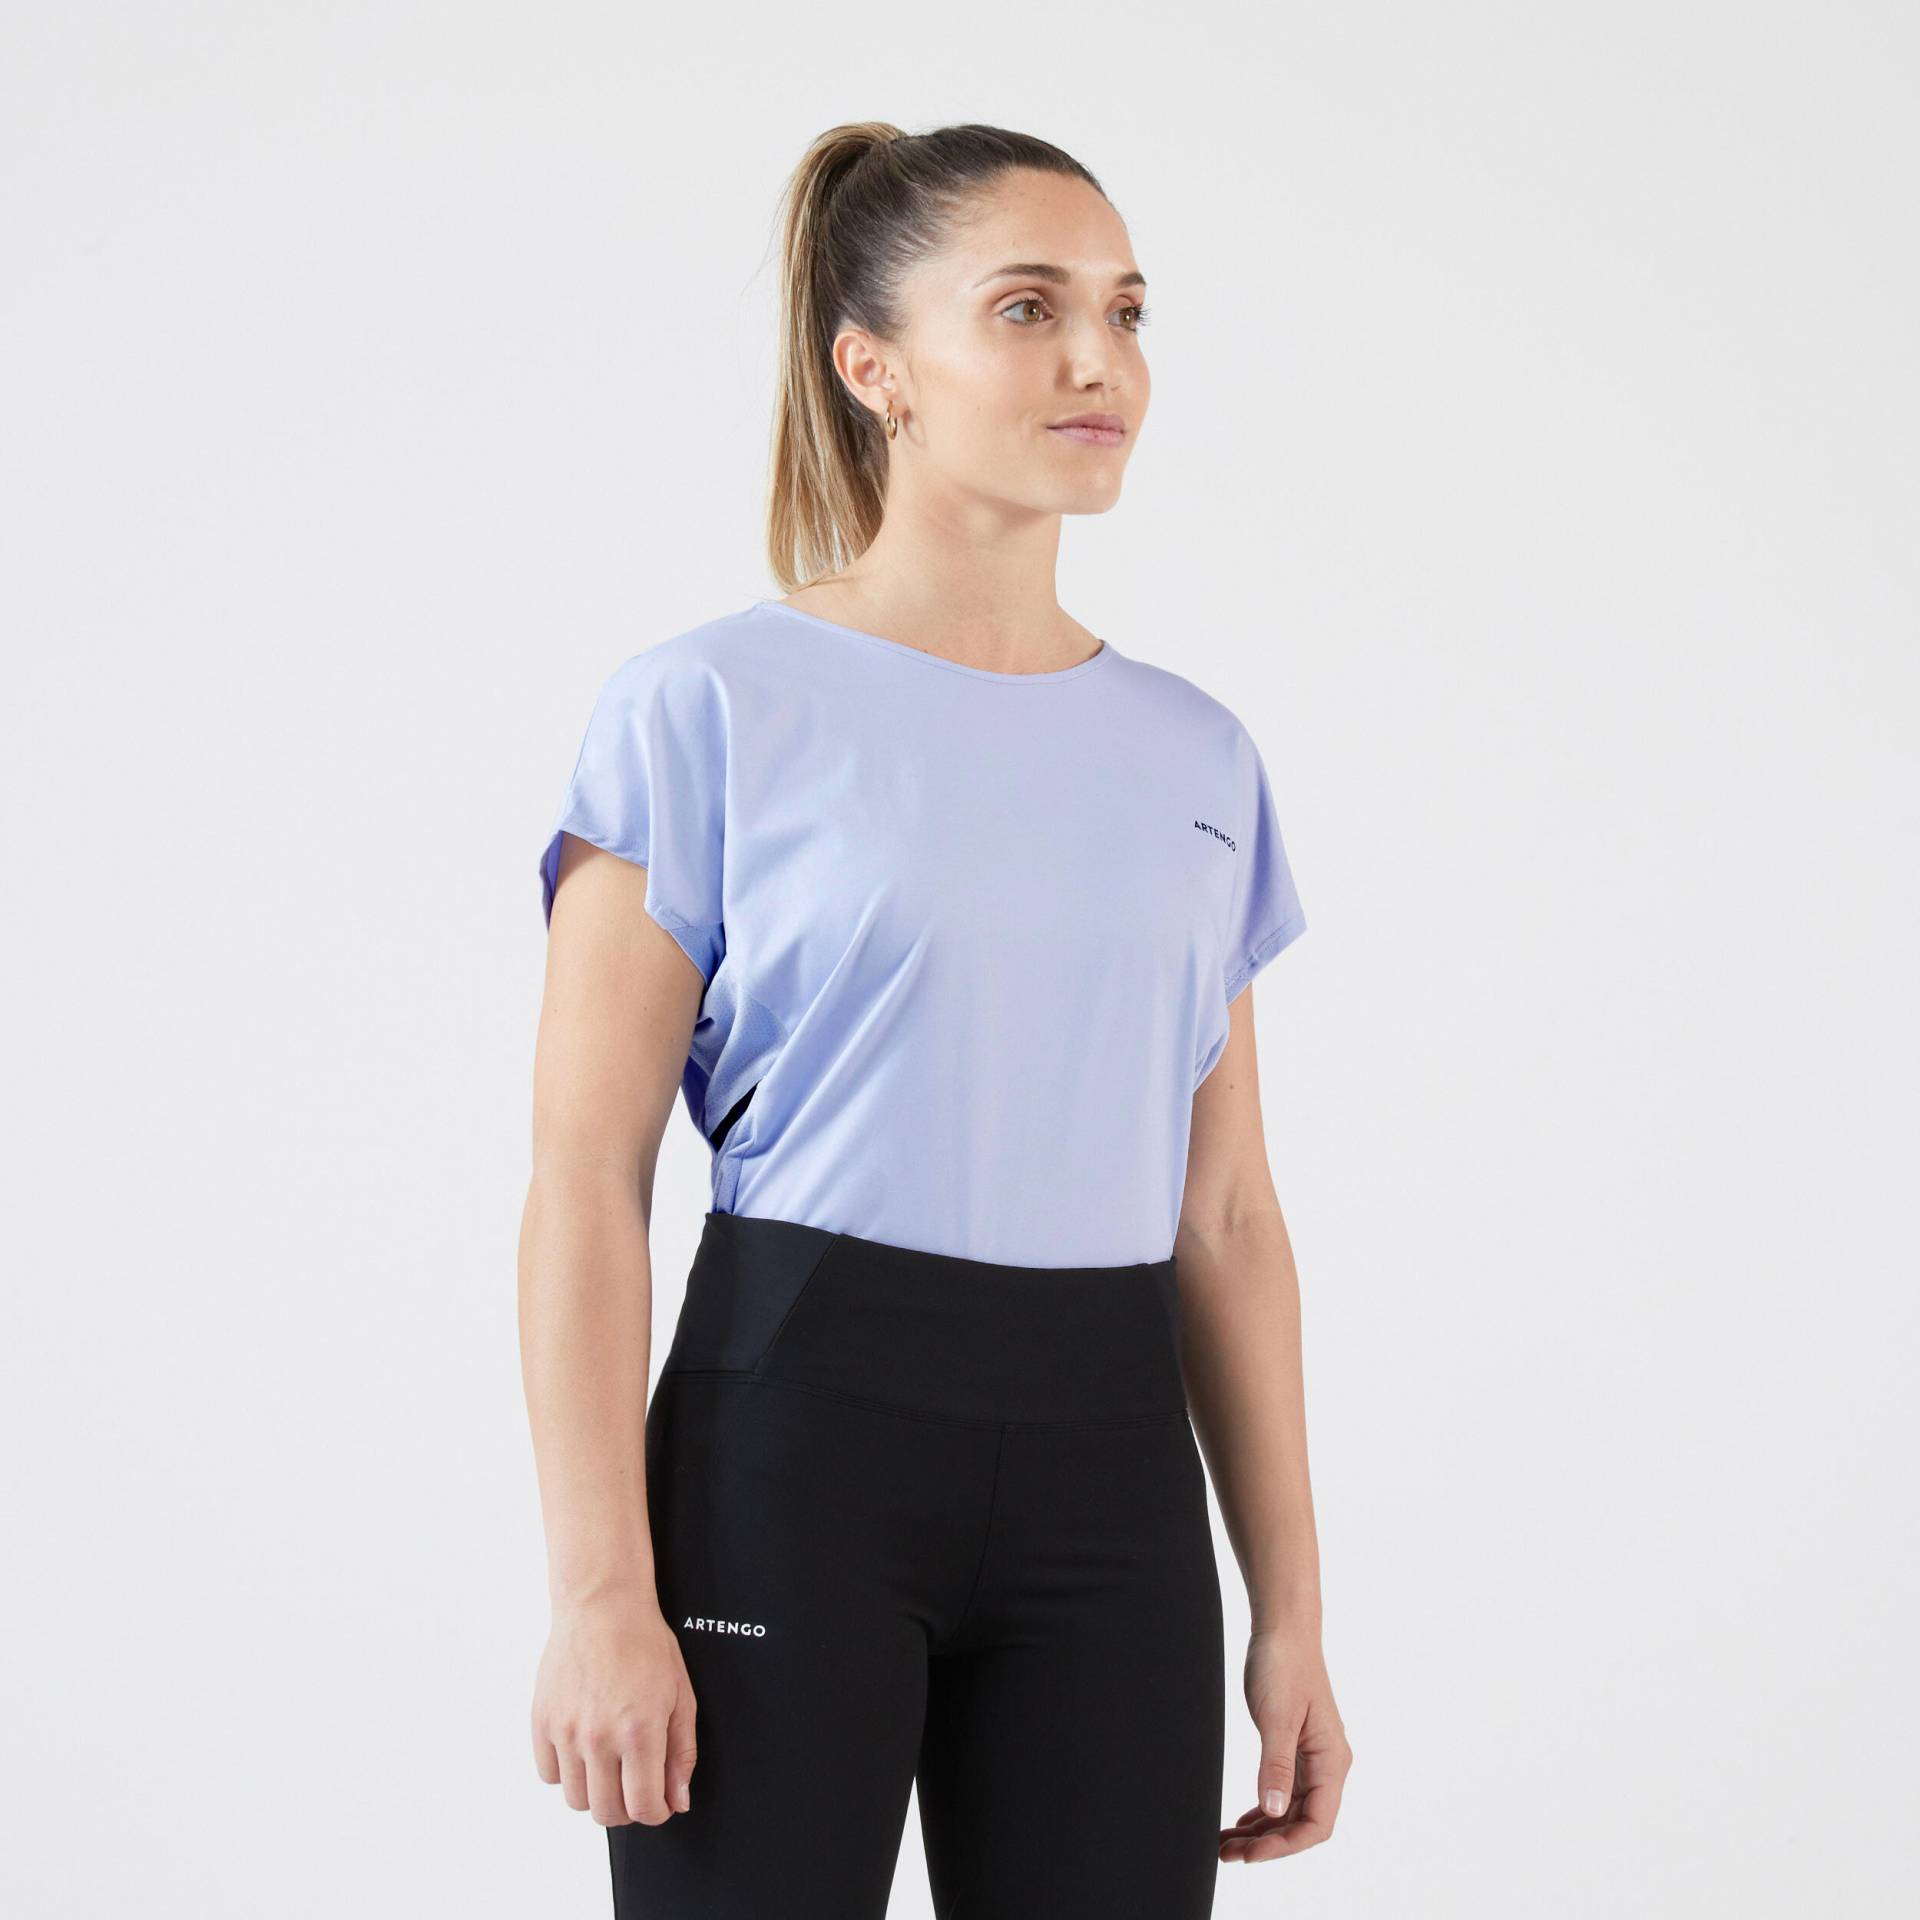 Damen Tennis T-Shirt Rundhals - Dry 500 blau von ARTENGO